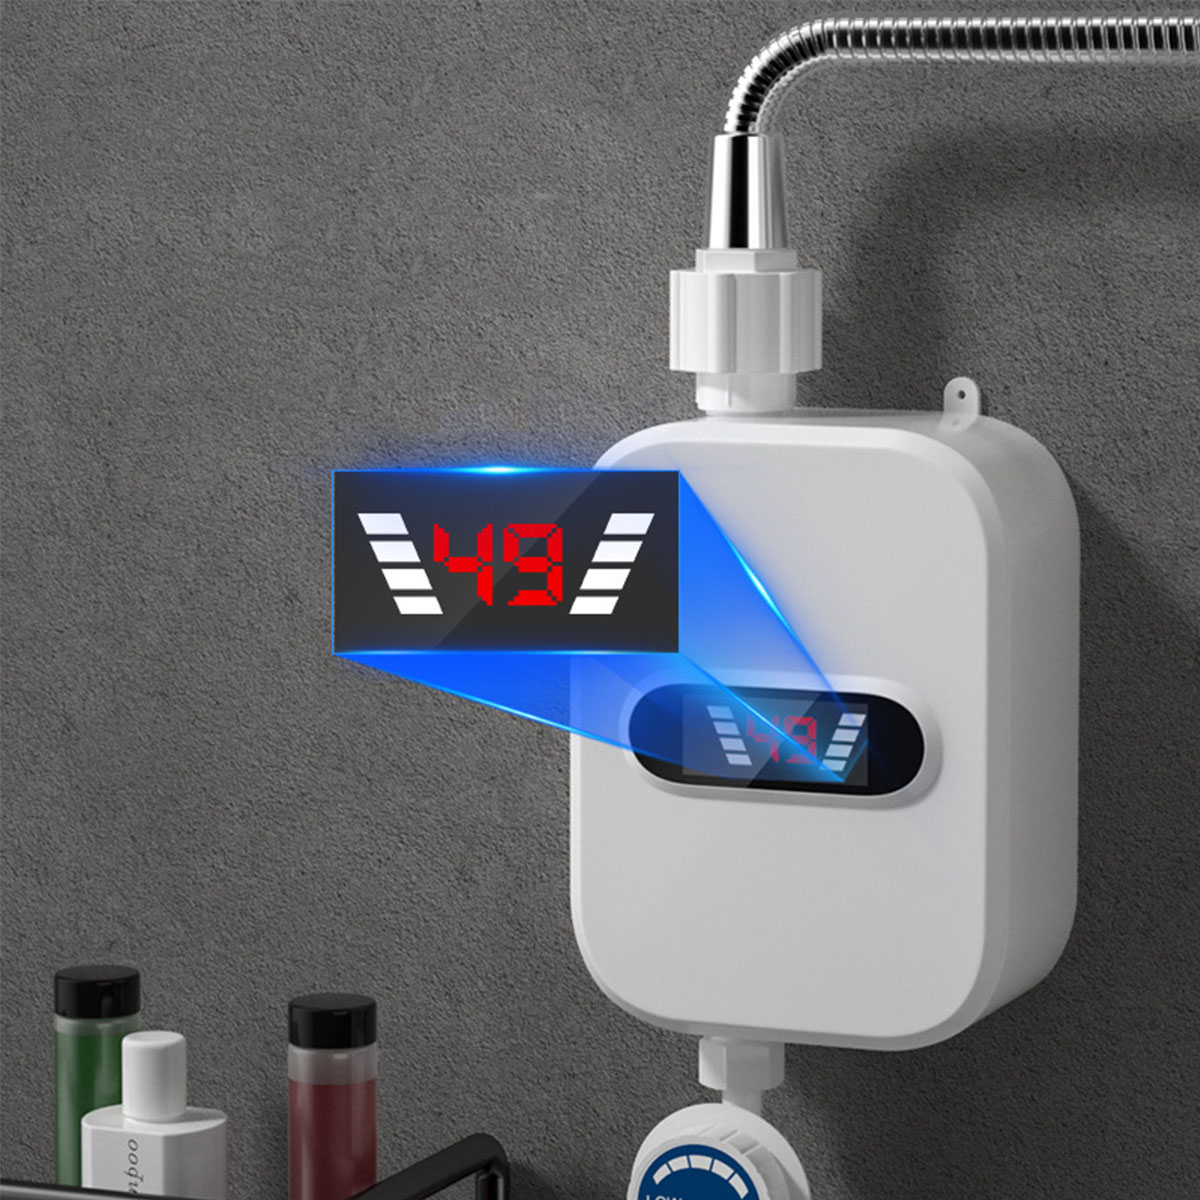 Sofortiges Thermostat-Durchlauferhitzer-Duschkopf-Set Warmwasserbereiter Kompakte BRIGHTAKE Warmwasser - Brausegarnitur